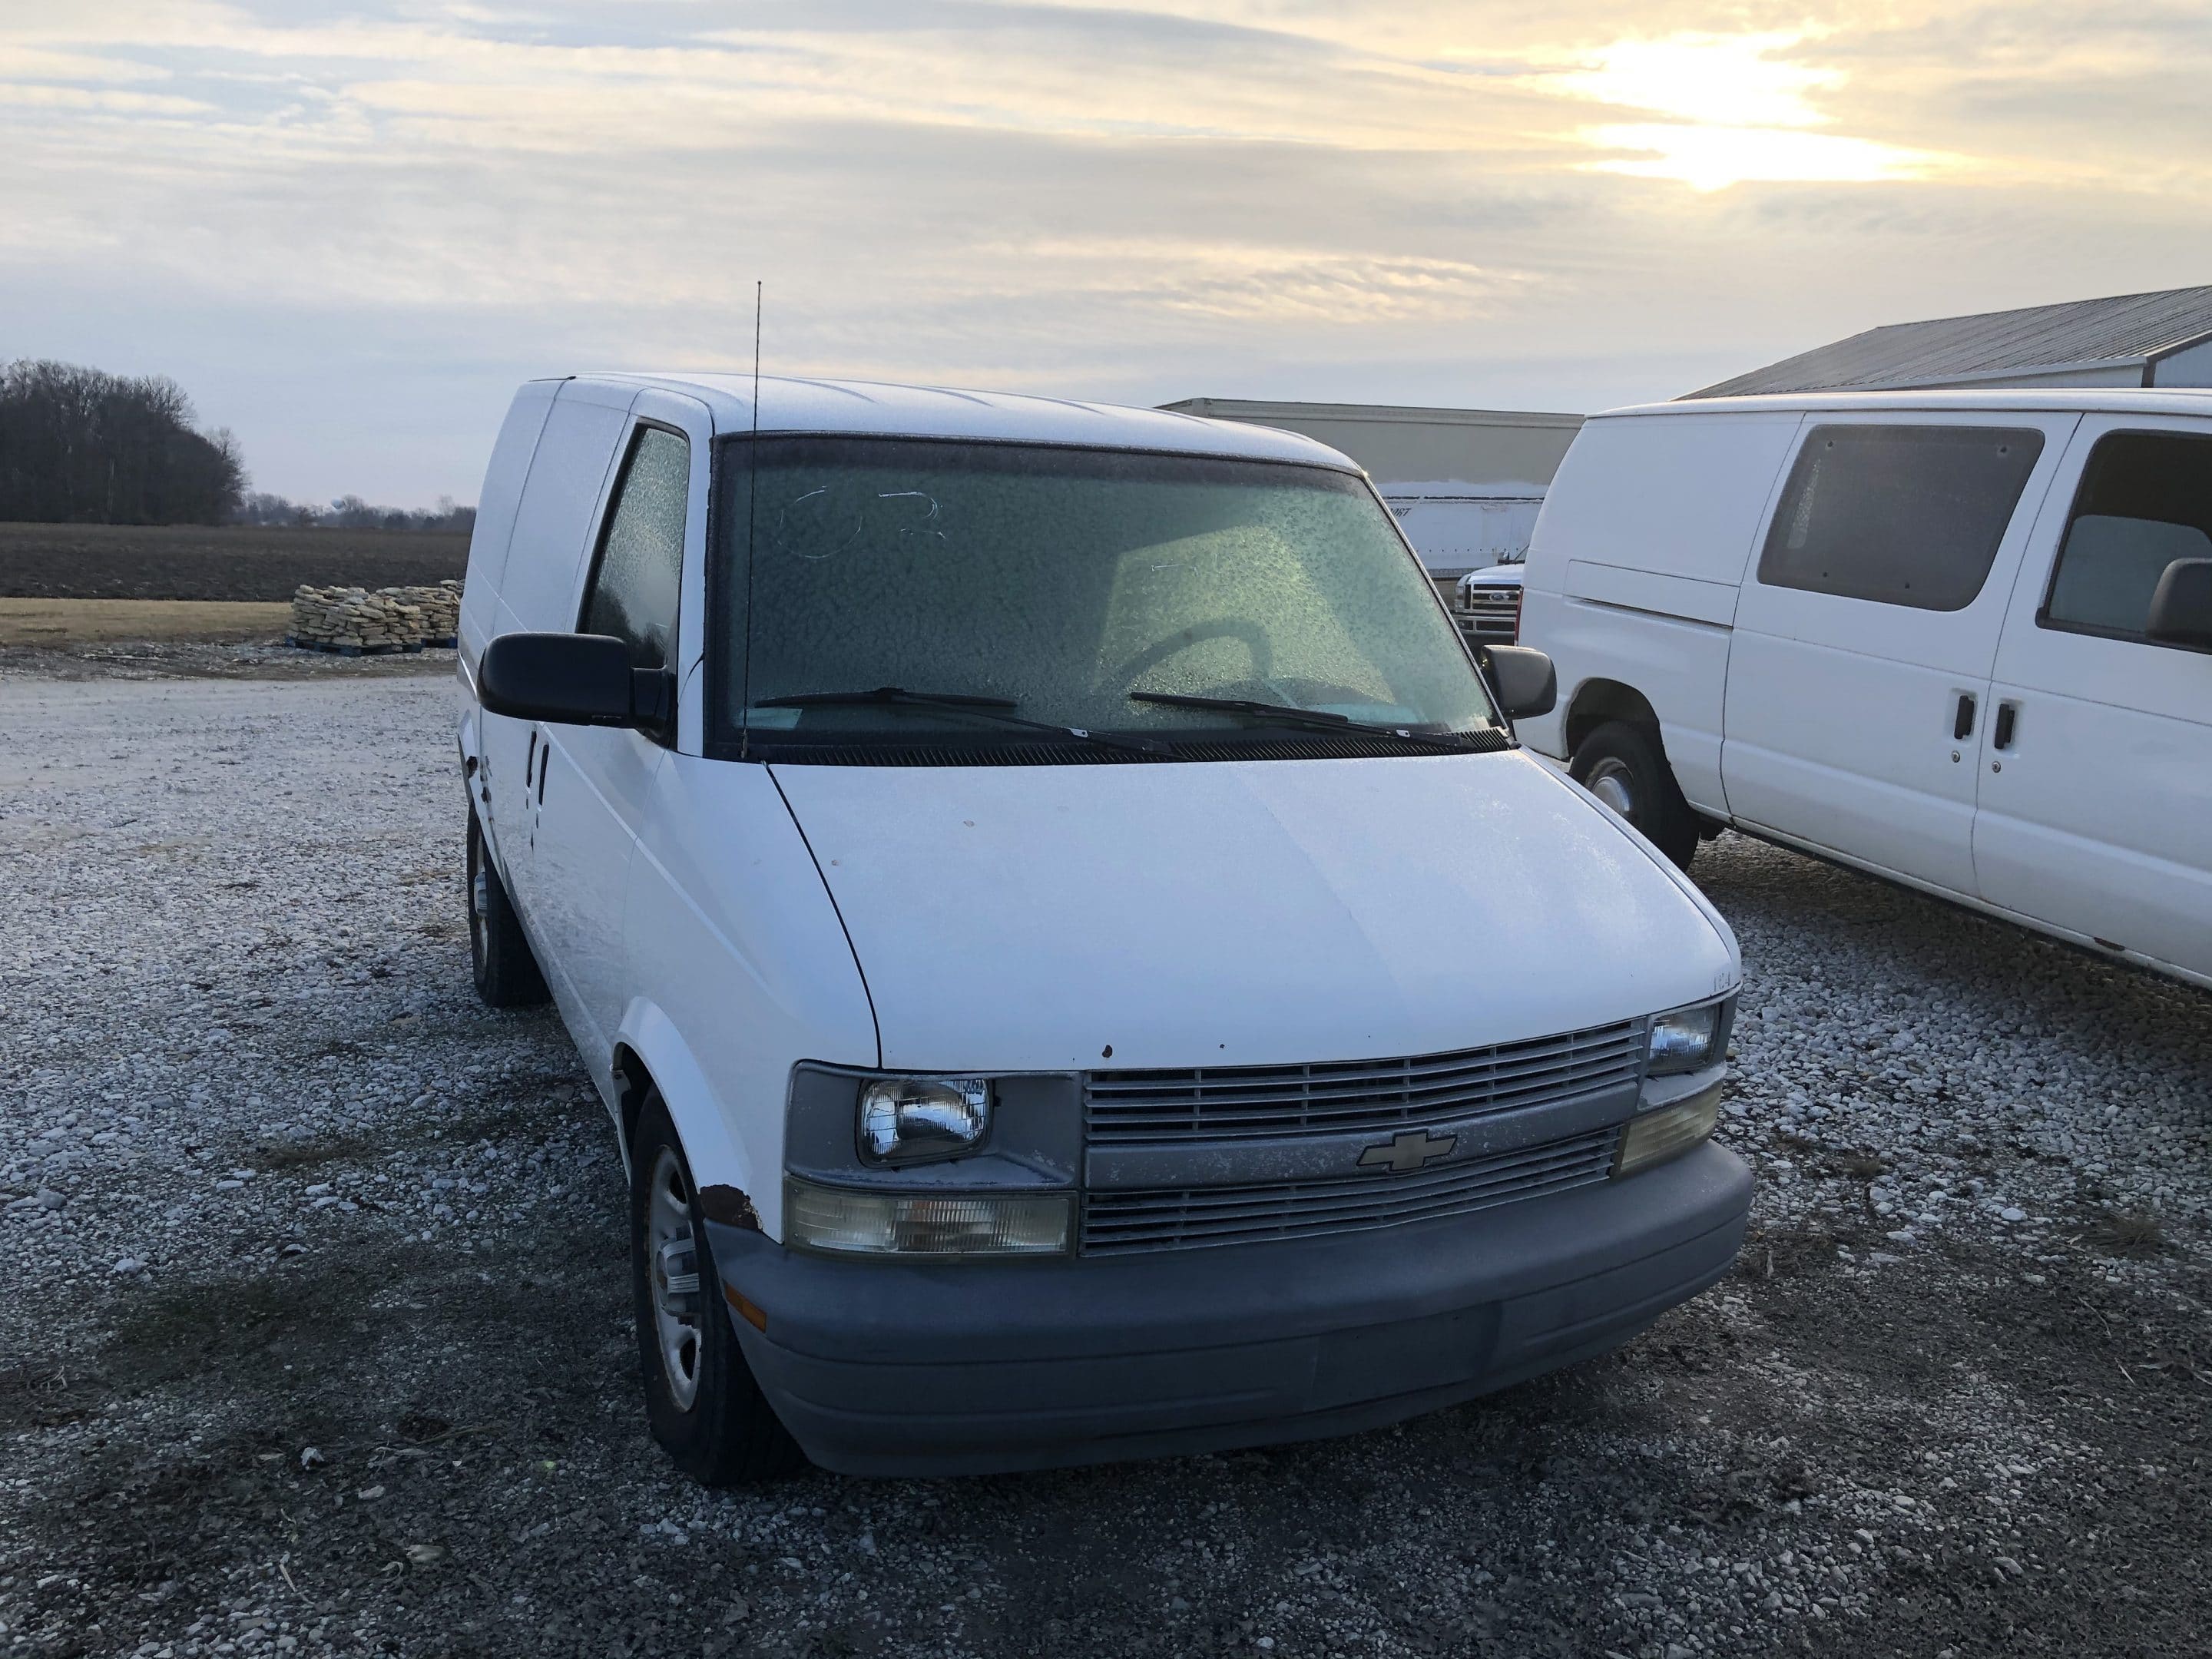 2003 Chevy Astro Van For Sale Wendt Rigging